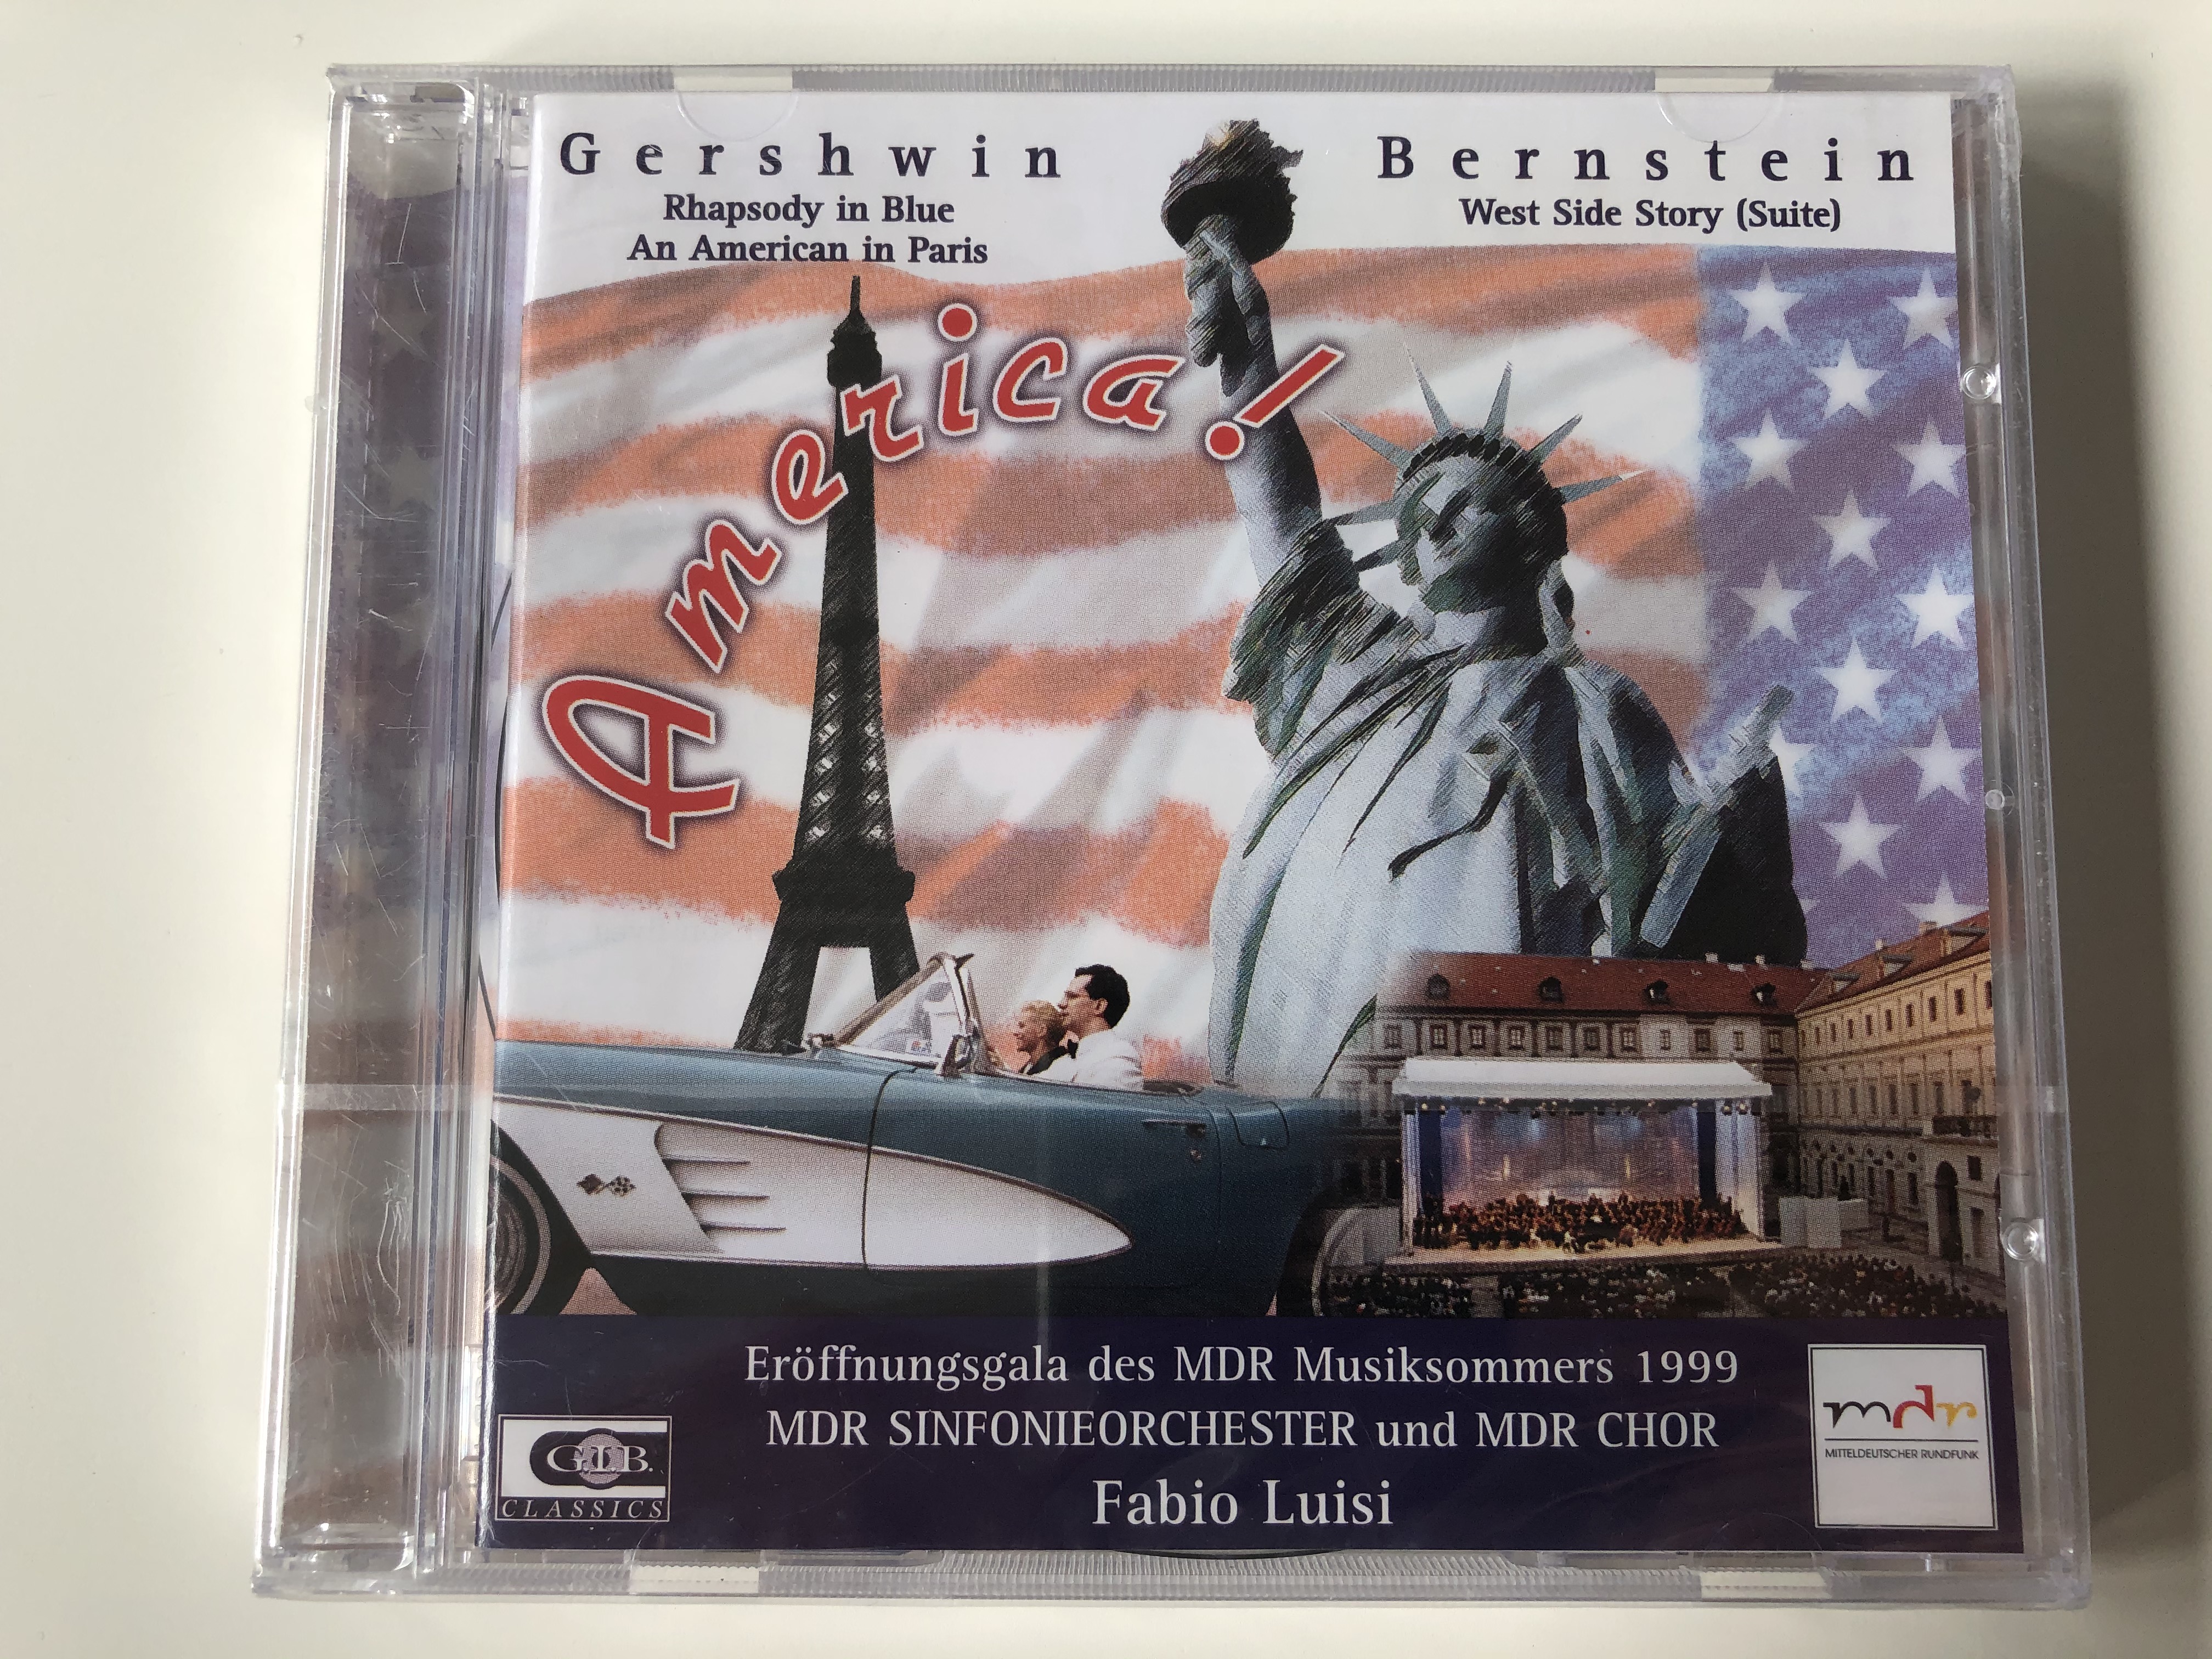 gershwin-rhapsody-in-blue-an-american-in-paris-bernstein-west-side-story-suite-america-eroffnungsgala-des-mdr-musiksommers-1999-mdr-sinfonieorchester-und-mdr-chor-fabio-luisi-g.-i.-1-.jpg